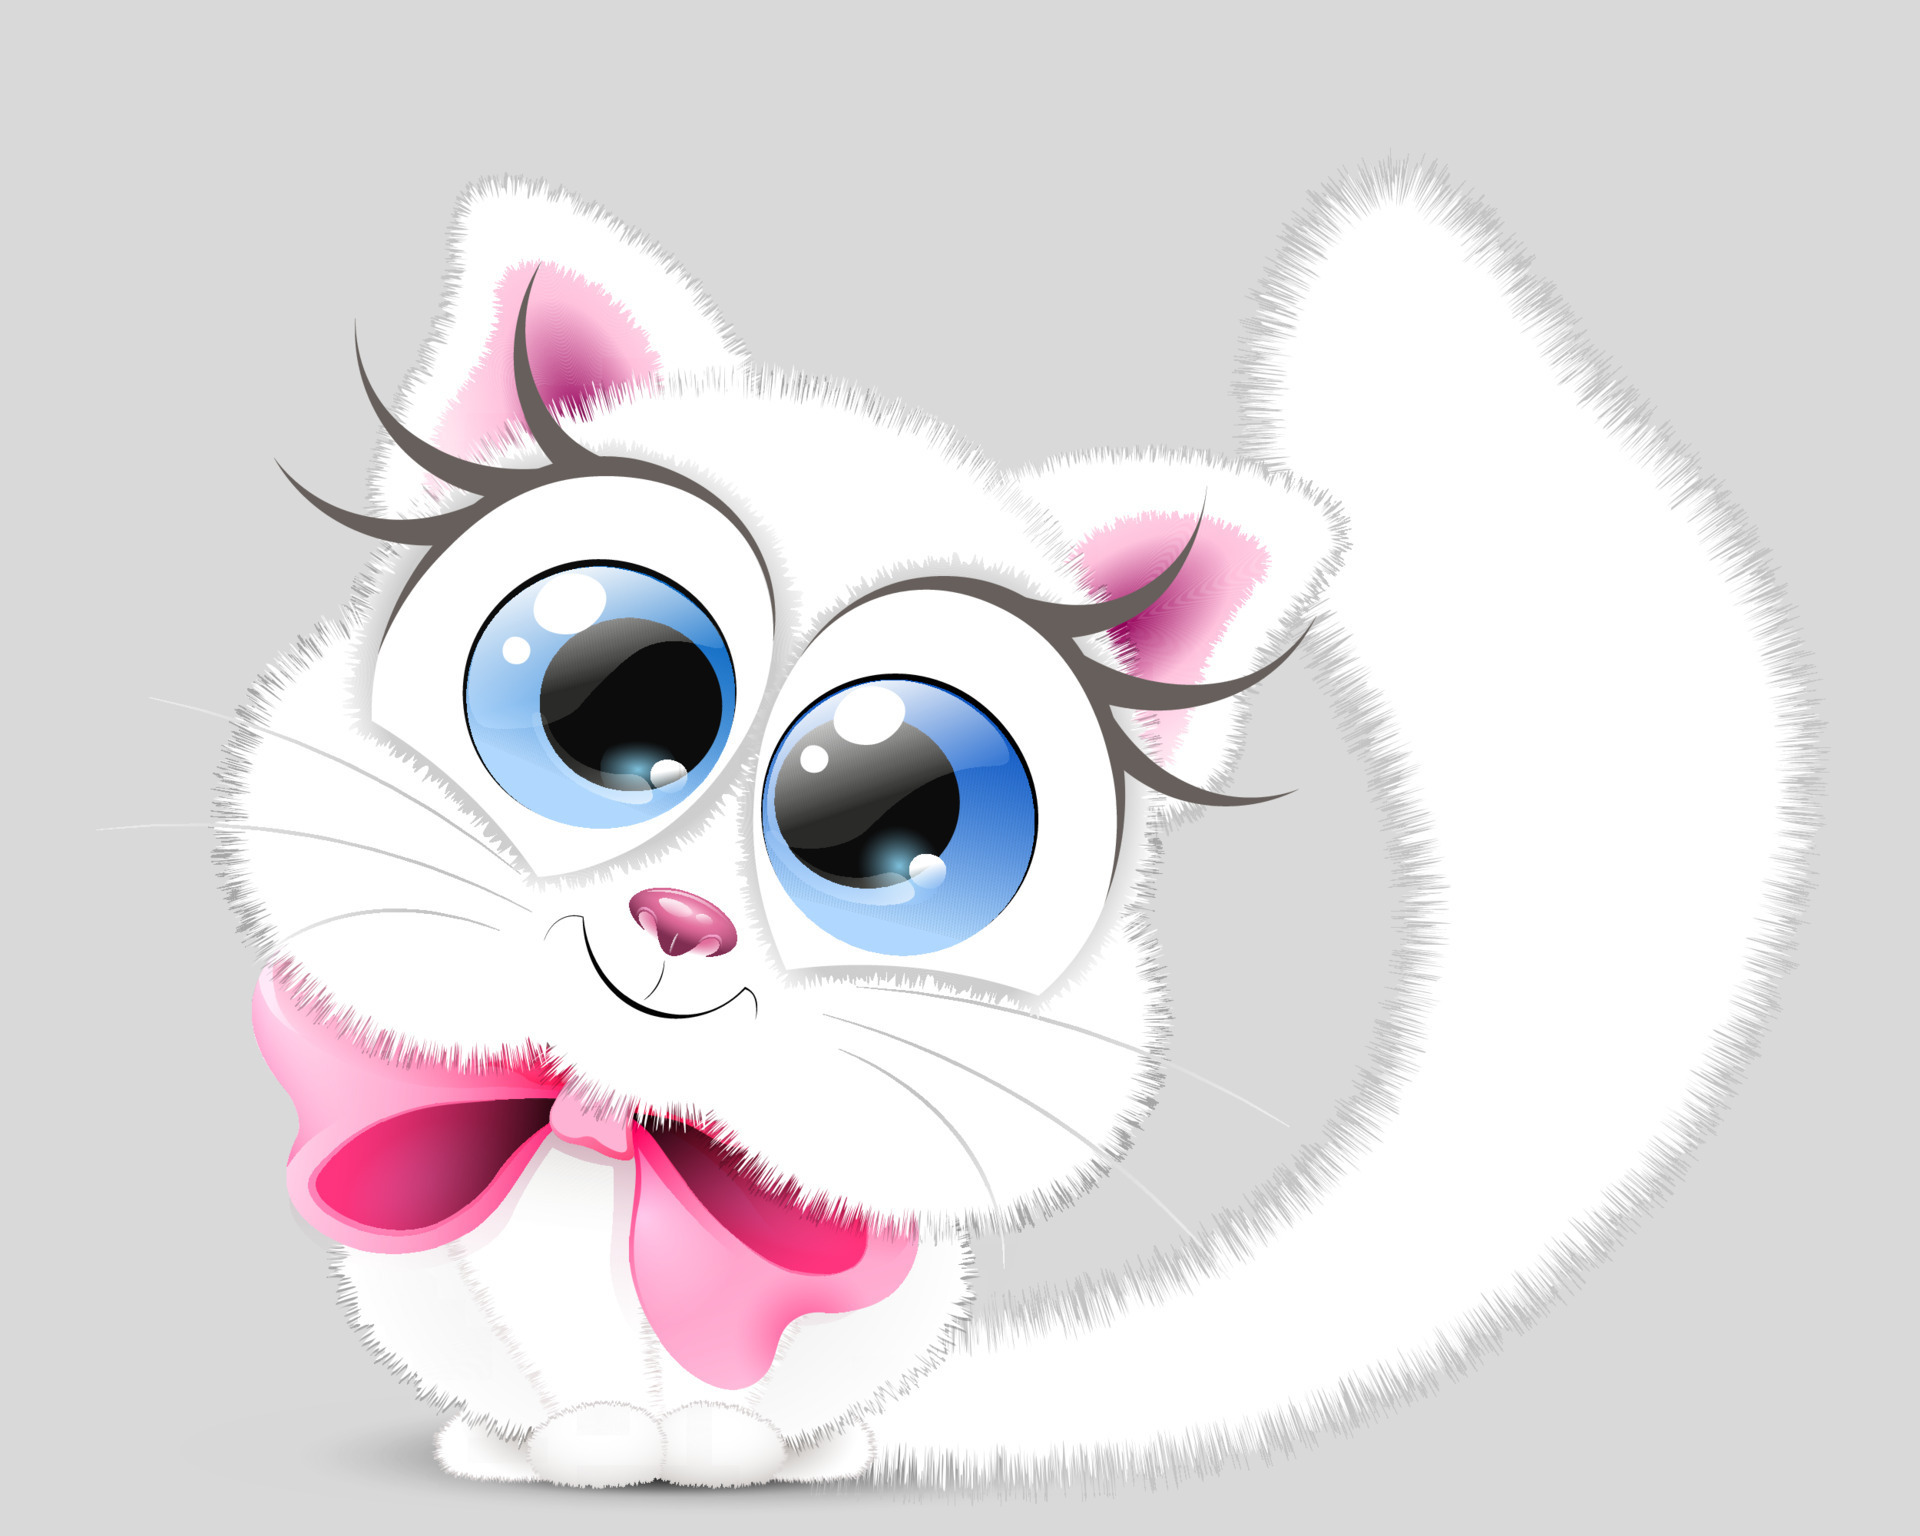 desenho de garota de gato fofo com laço vermelho 5565950 Vetor no Vecteezy